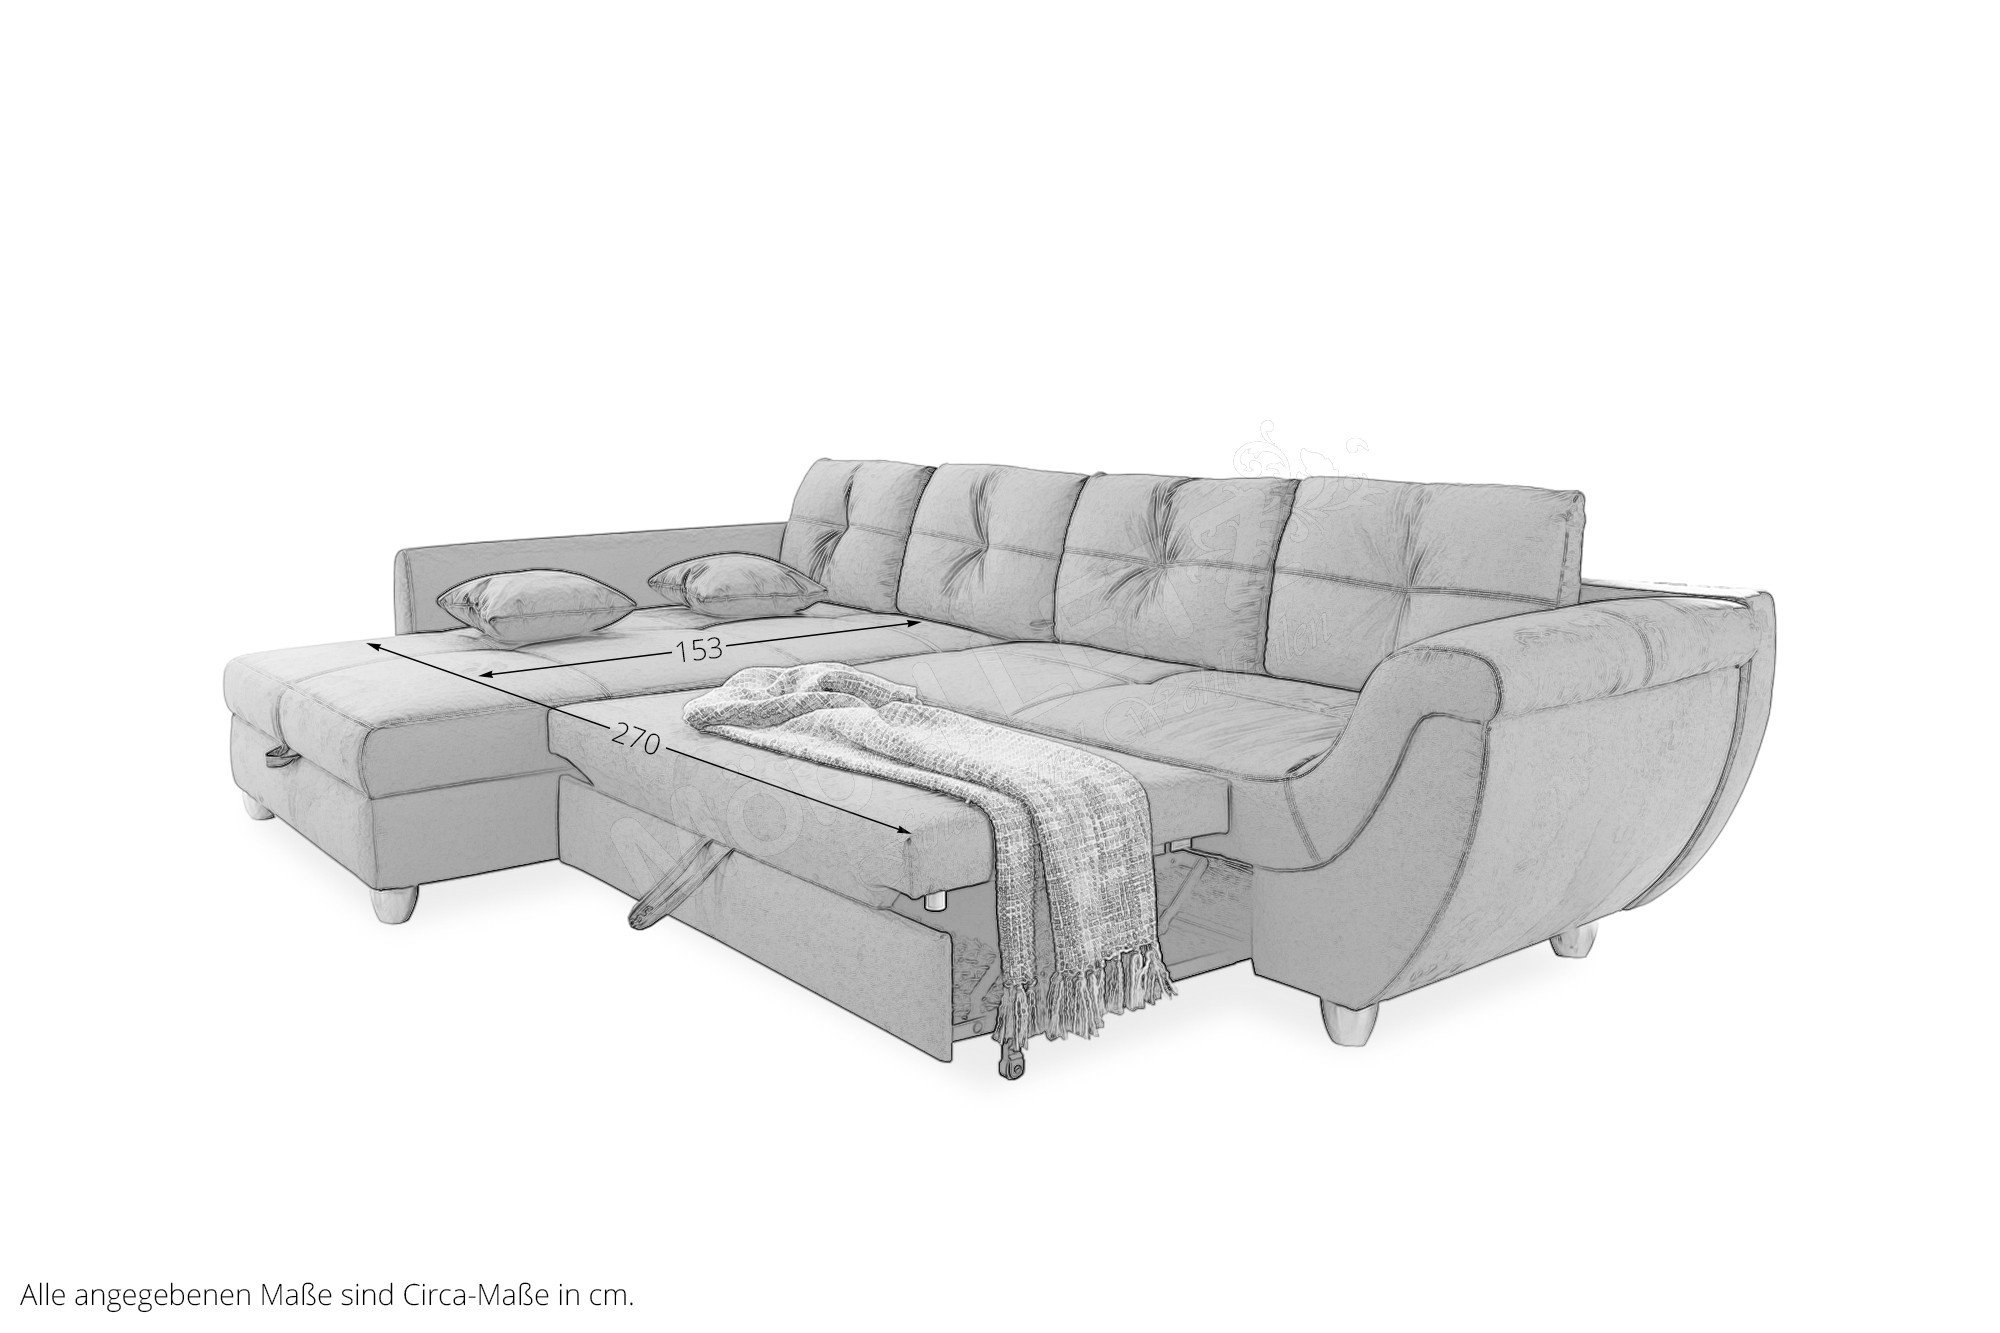 Jockenhöfer Polstermöbel Maranello Sofa in L-Form grau | Möbel Letz - Ihr  Online-Shop